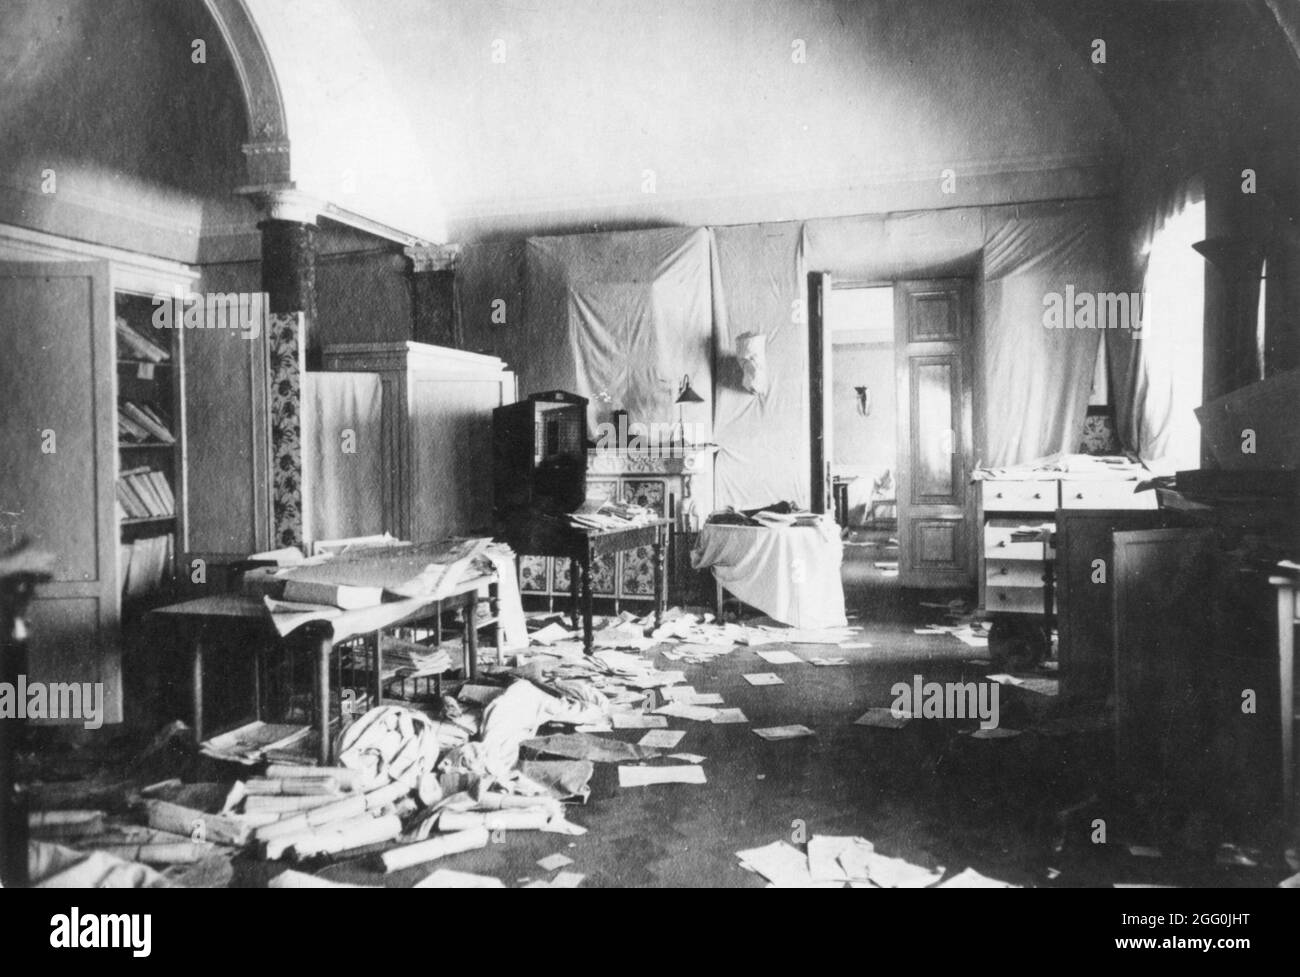 La chambre de la duchesse Tatiana, au Palais d'hiver de Saint-Pétersbourg, a été pillée et endommagée après la Révolution d'octobre. Saint-Pétersbourg, Russie, 8 novembre 1917. Banque D'Images